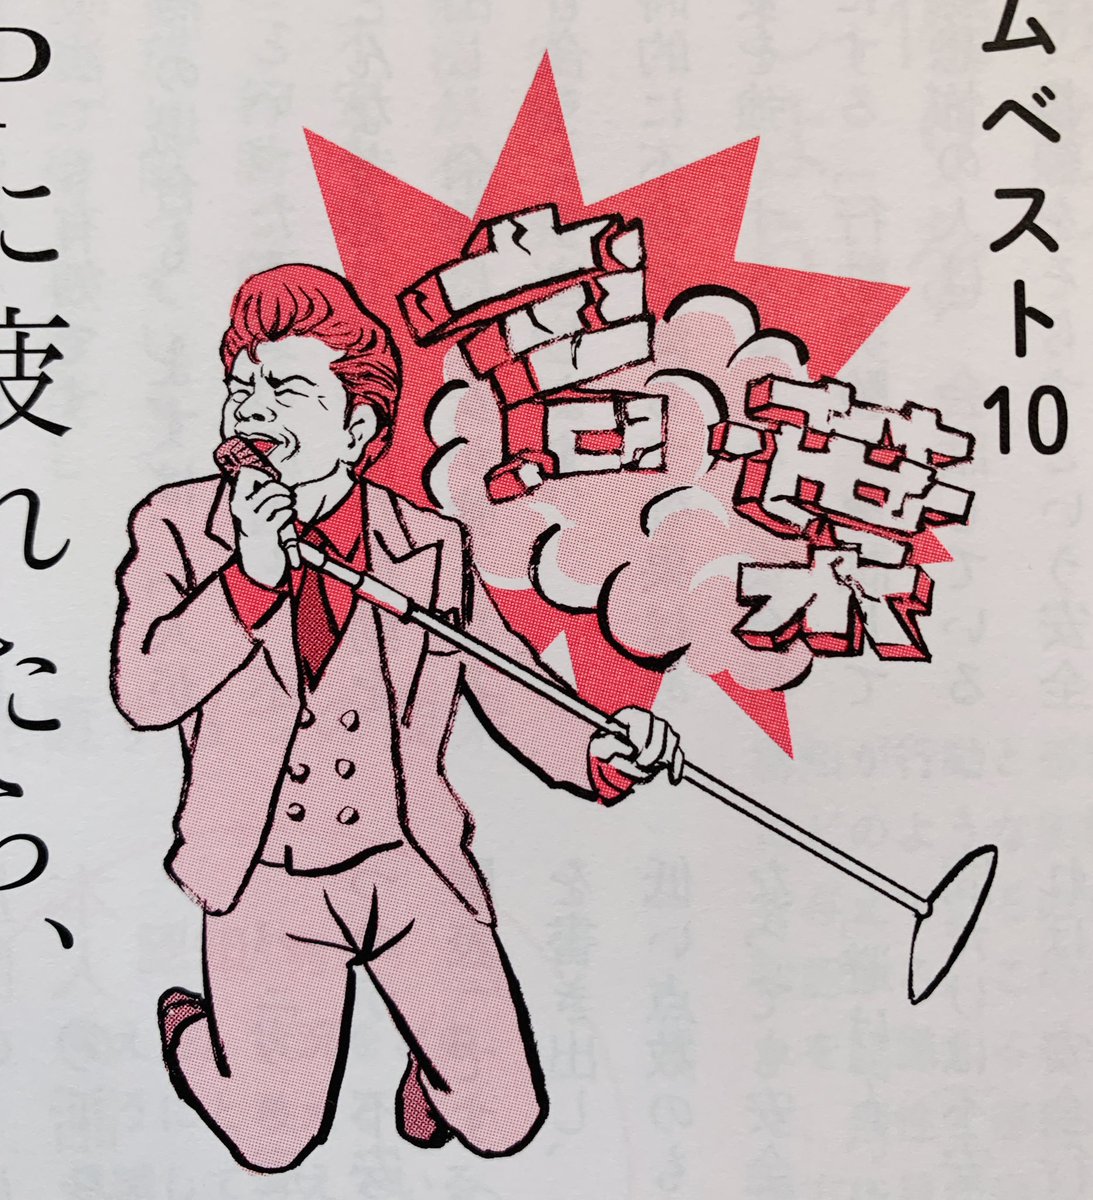 「暮しの手帖」の音楽コーナーで浜野謙太さんを描きました。浜野さんの選曲テーマは「言葉から逃れられる10選」。
ジェームスブラウンに見えるかもしれないけど顔は浜野謙太さんだ(在日ファンクのステージキマってる)ゲロッパ! 